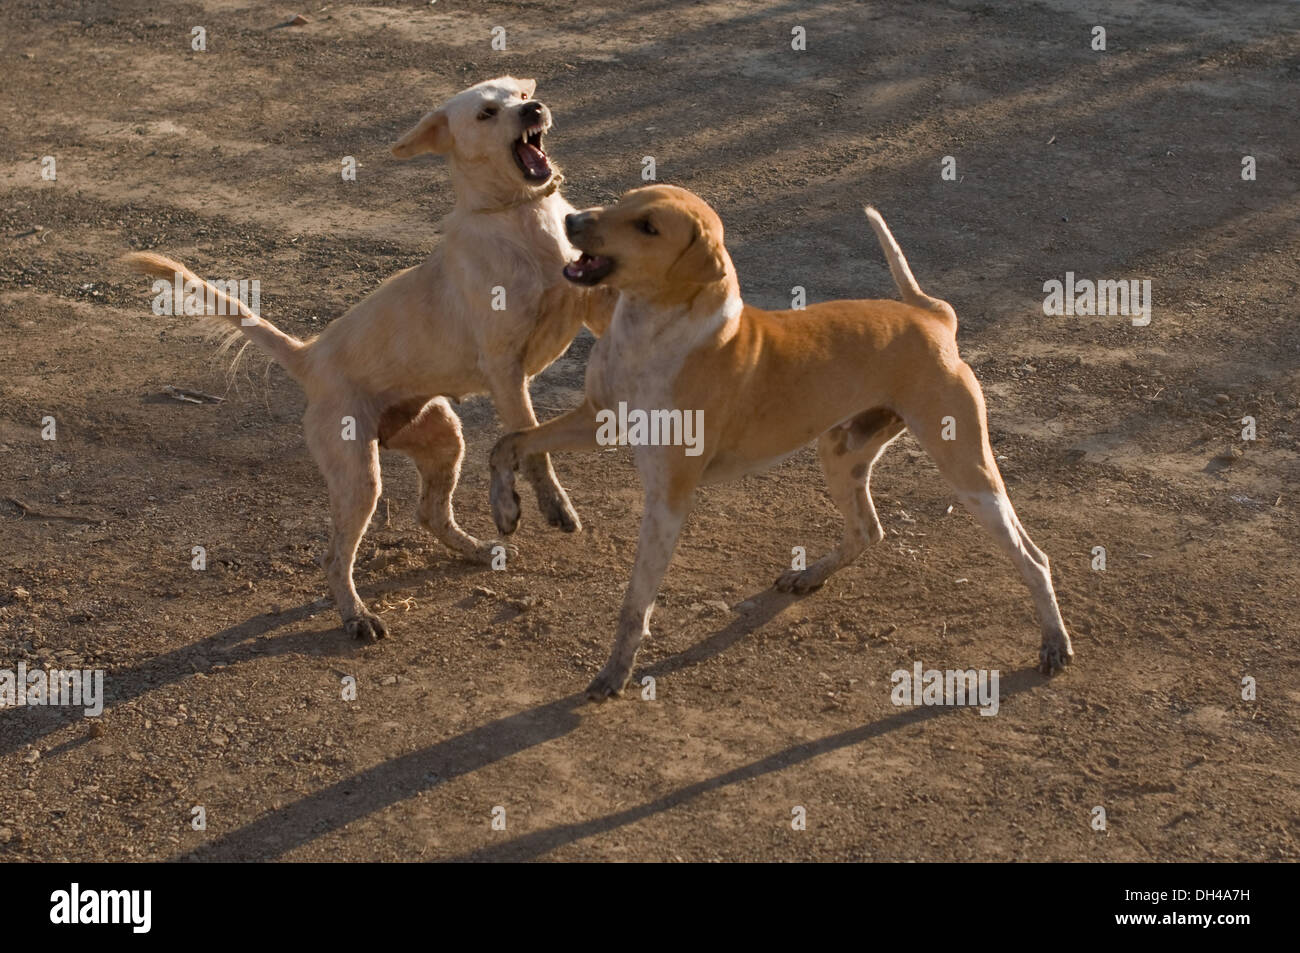 dogs playing fighting Pune Maharashtra India Asia Jan 2012 Stock Photo